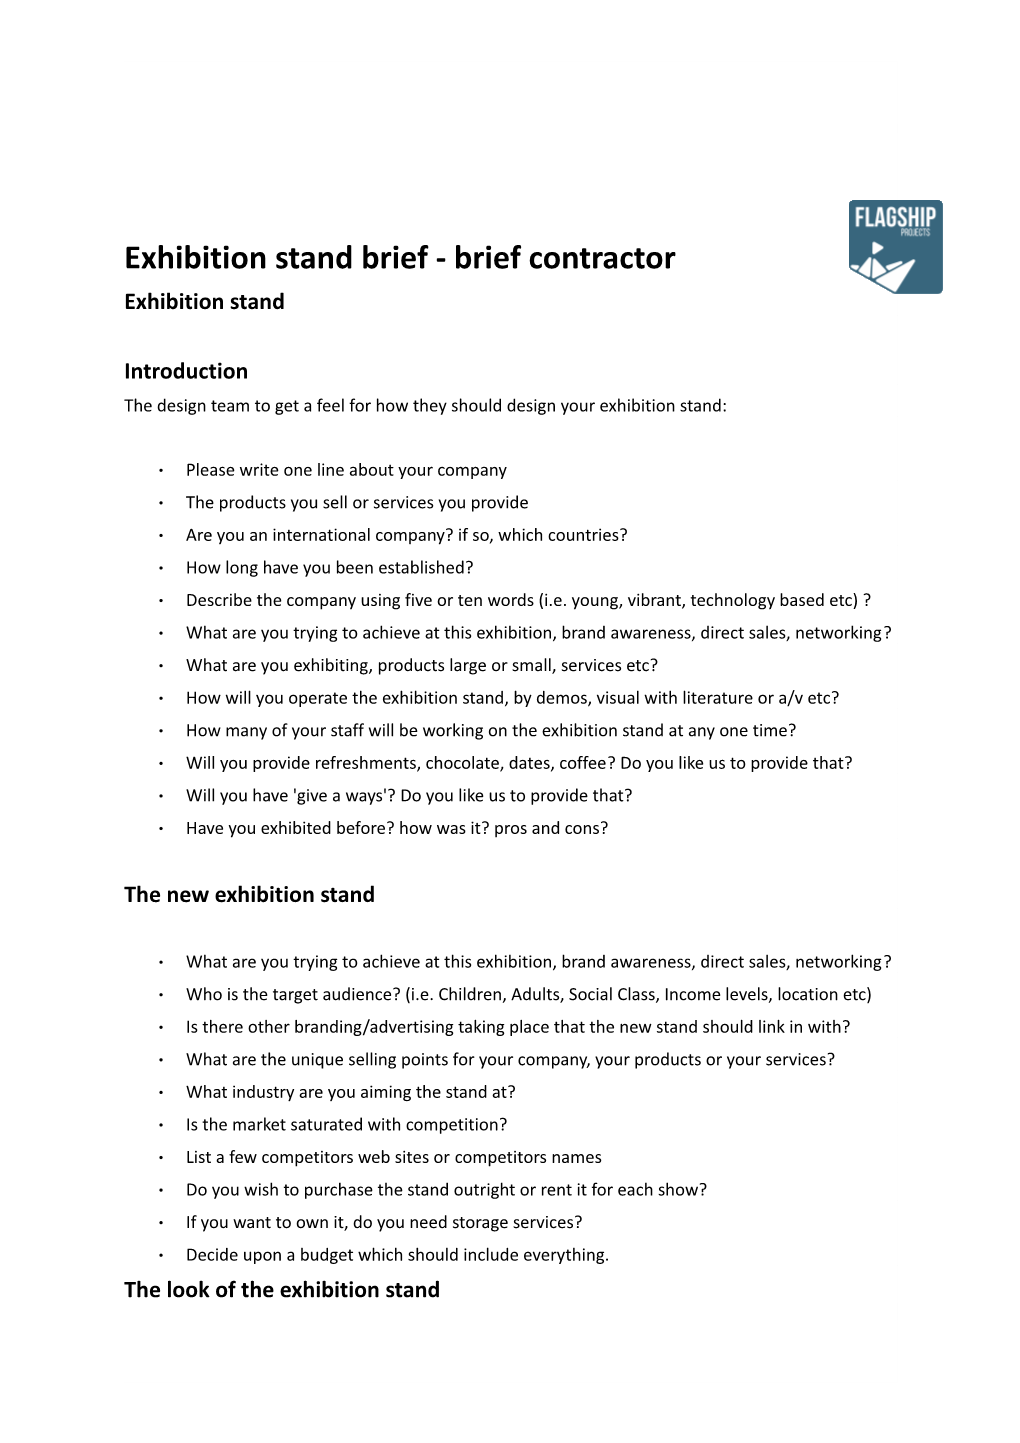 Exhibition Stand Brief - Brief Contractor